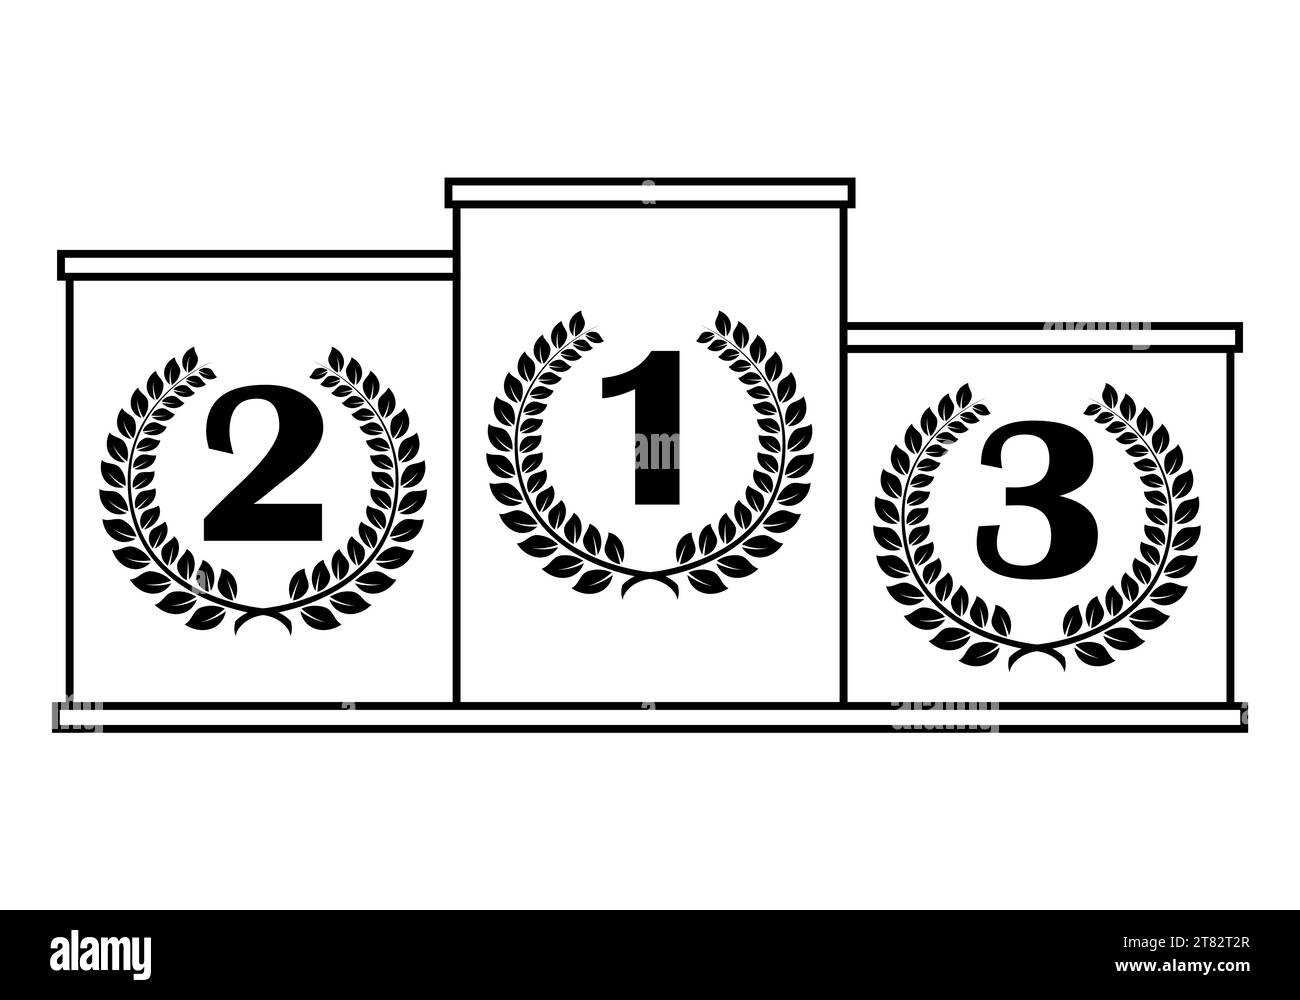 Siegerpodest mit Zahlen im Lorbeerkranz, schwarz-weiße Vektor-Illustration auf weißem Hintergrund Stock Vektor